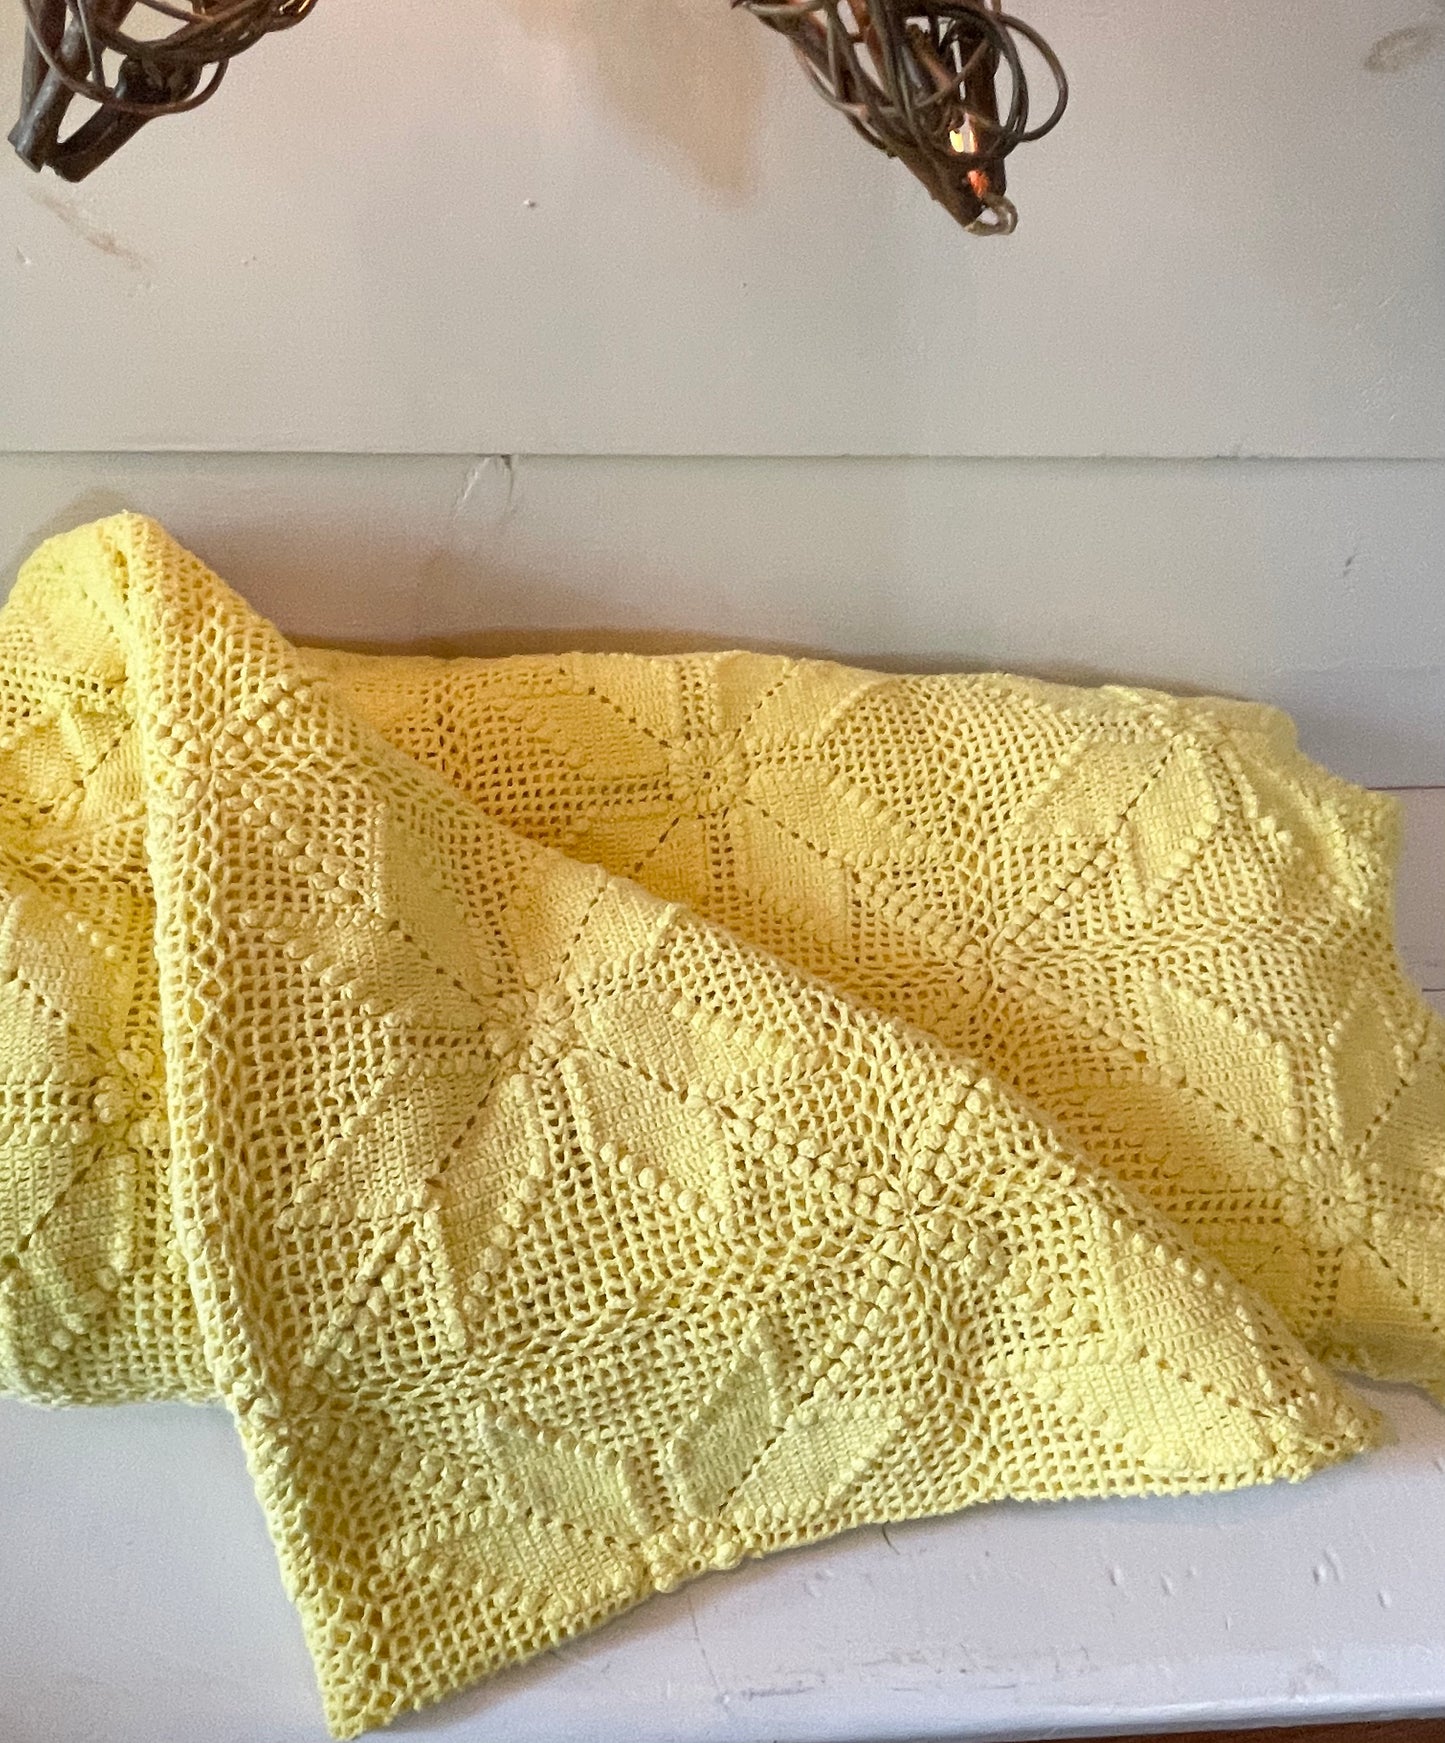 Vintage cotton star patterned knit blanket